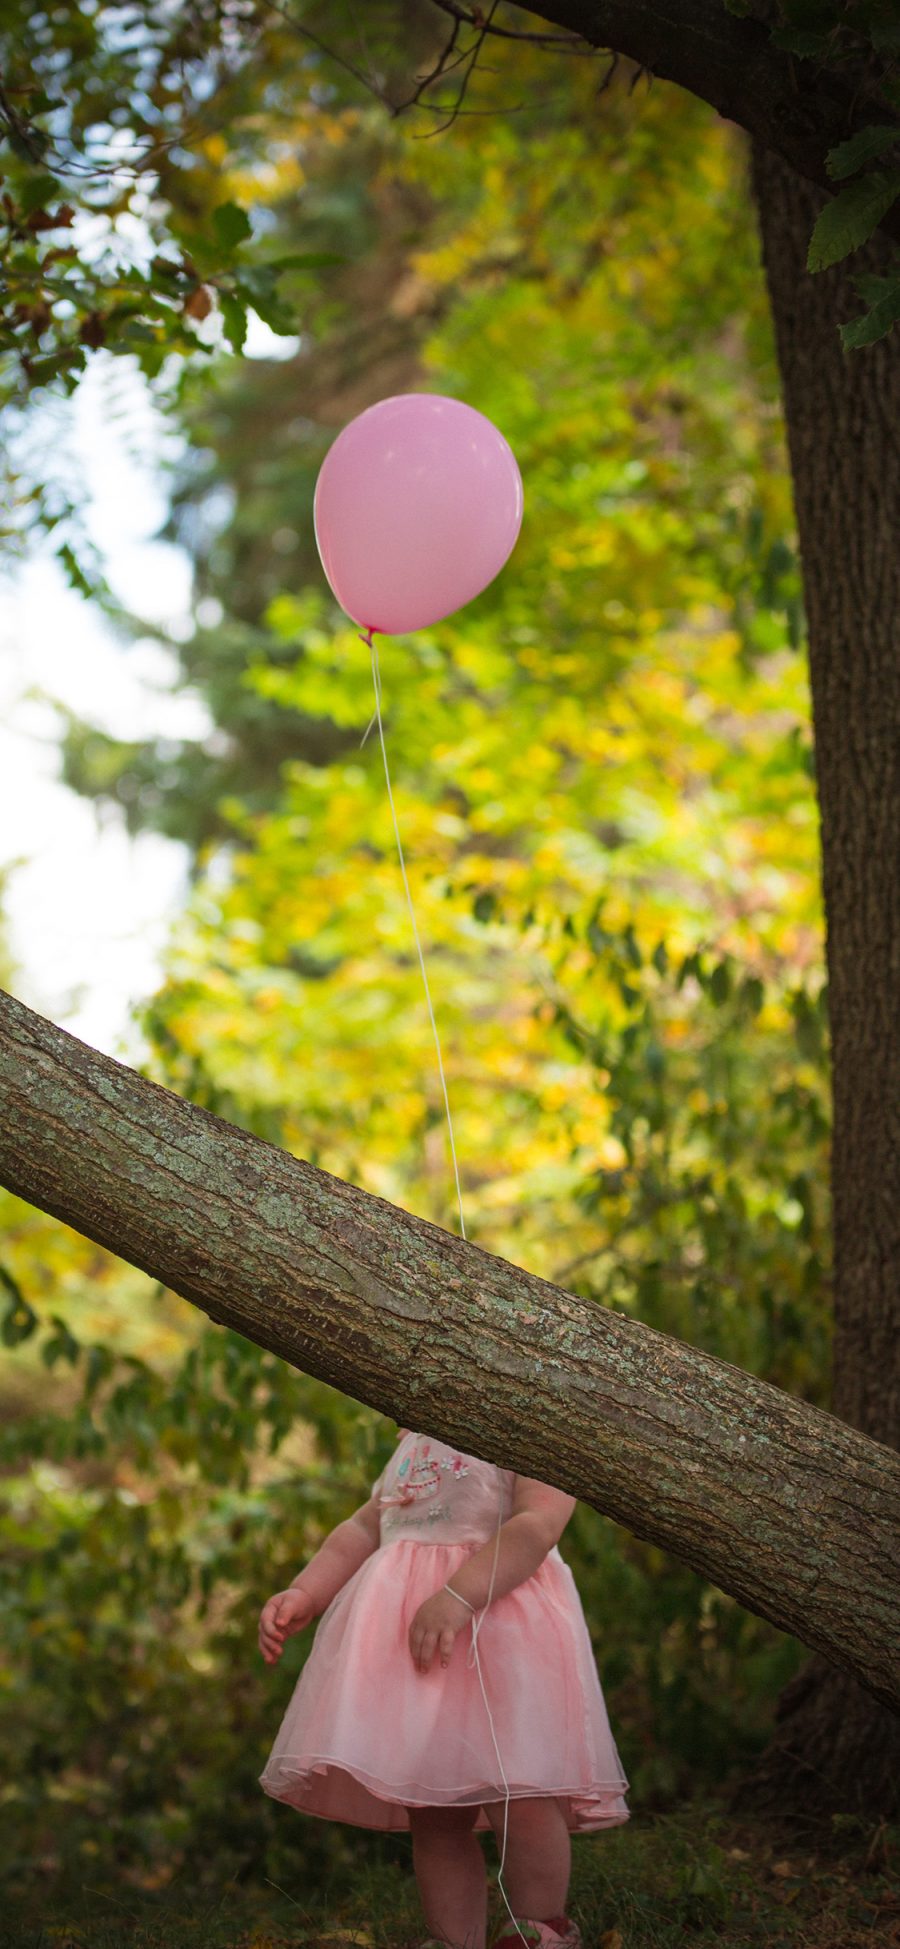 [2436×1125]郊外 萌娃 气球 粉色 苹果手机壁纸图片